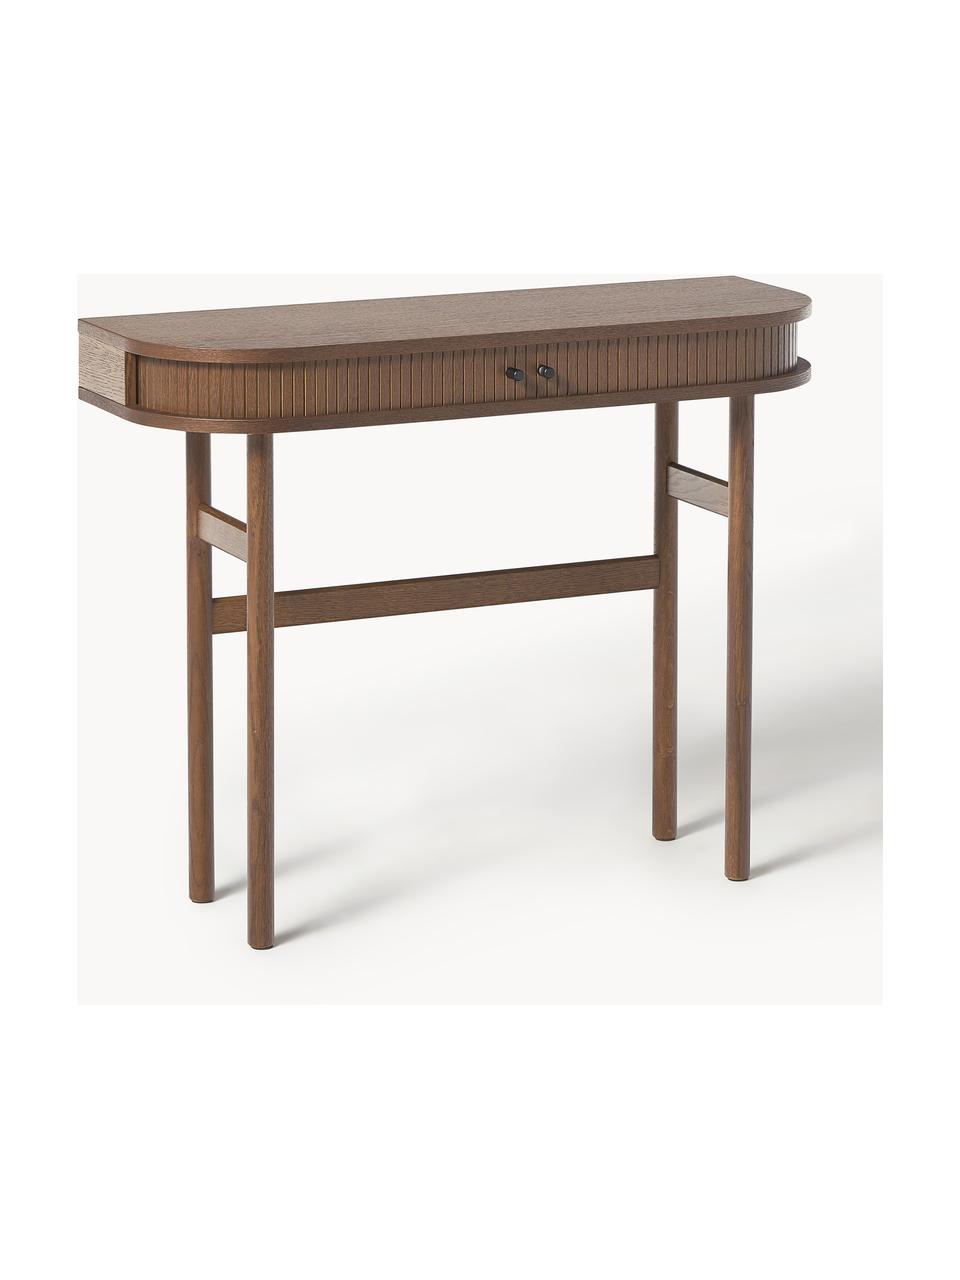 Konzolový stolík s drážkovanou prednou stranou Calary, Dubové drevo, tmavohnedá lakované, Š 100 x V 80 cm